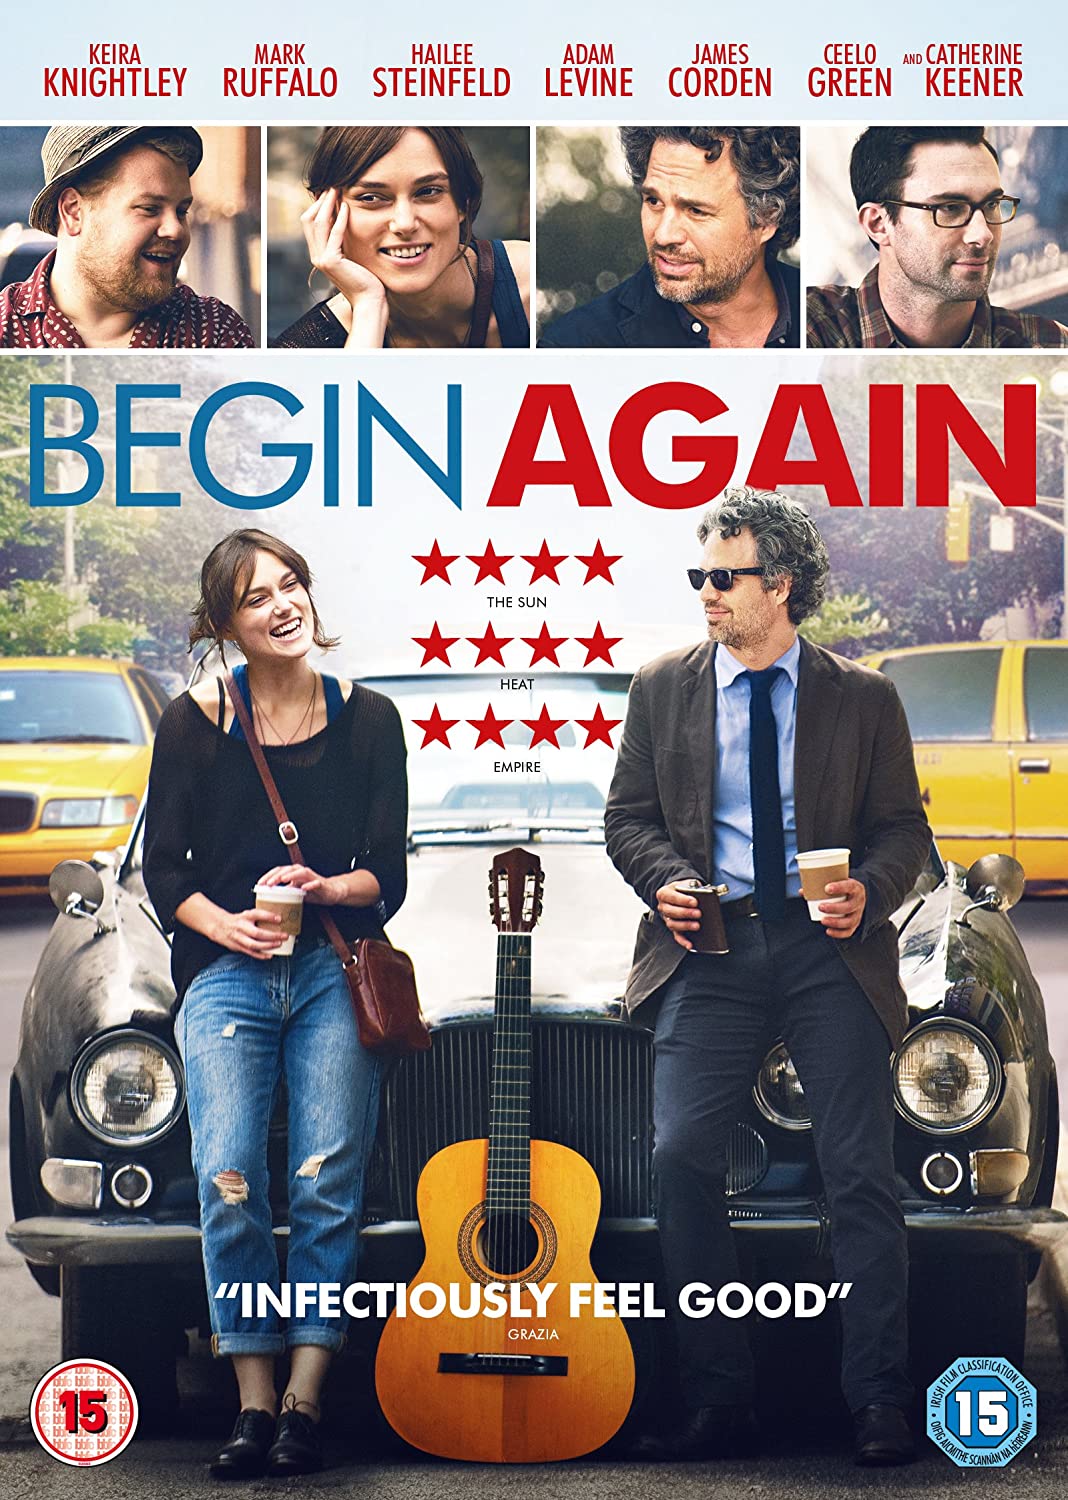 Begin Again (2013) ★★★★☆